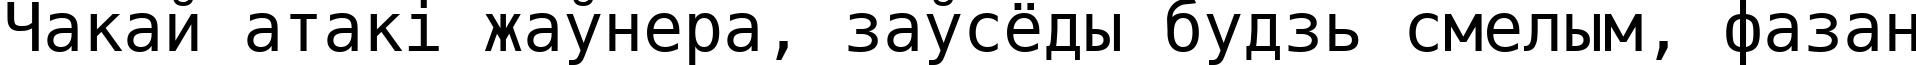 Пример написания шрифтом DejaVu Sans Mono текста на белорусском